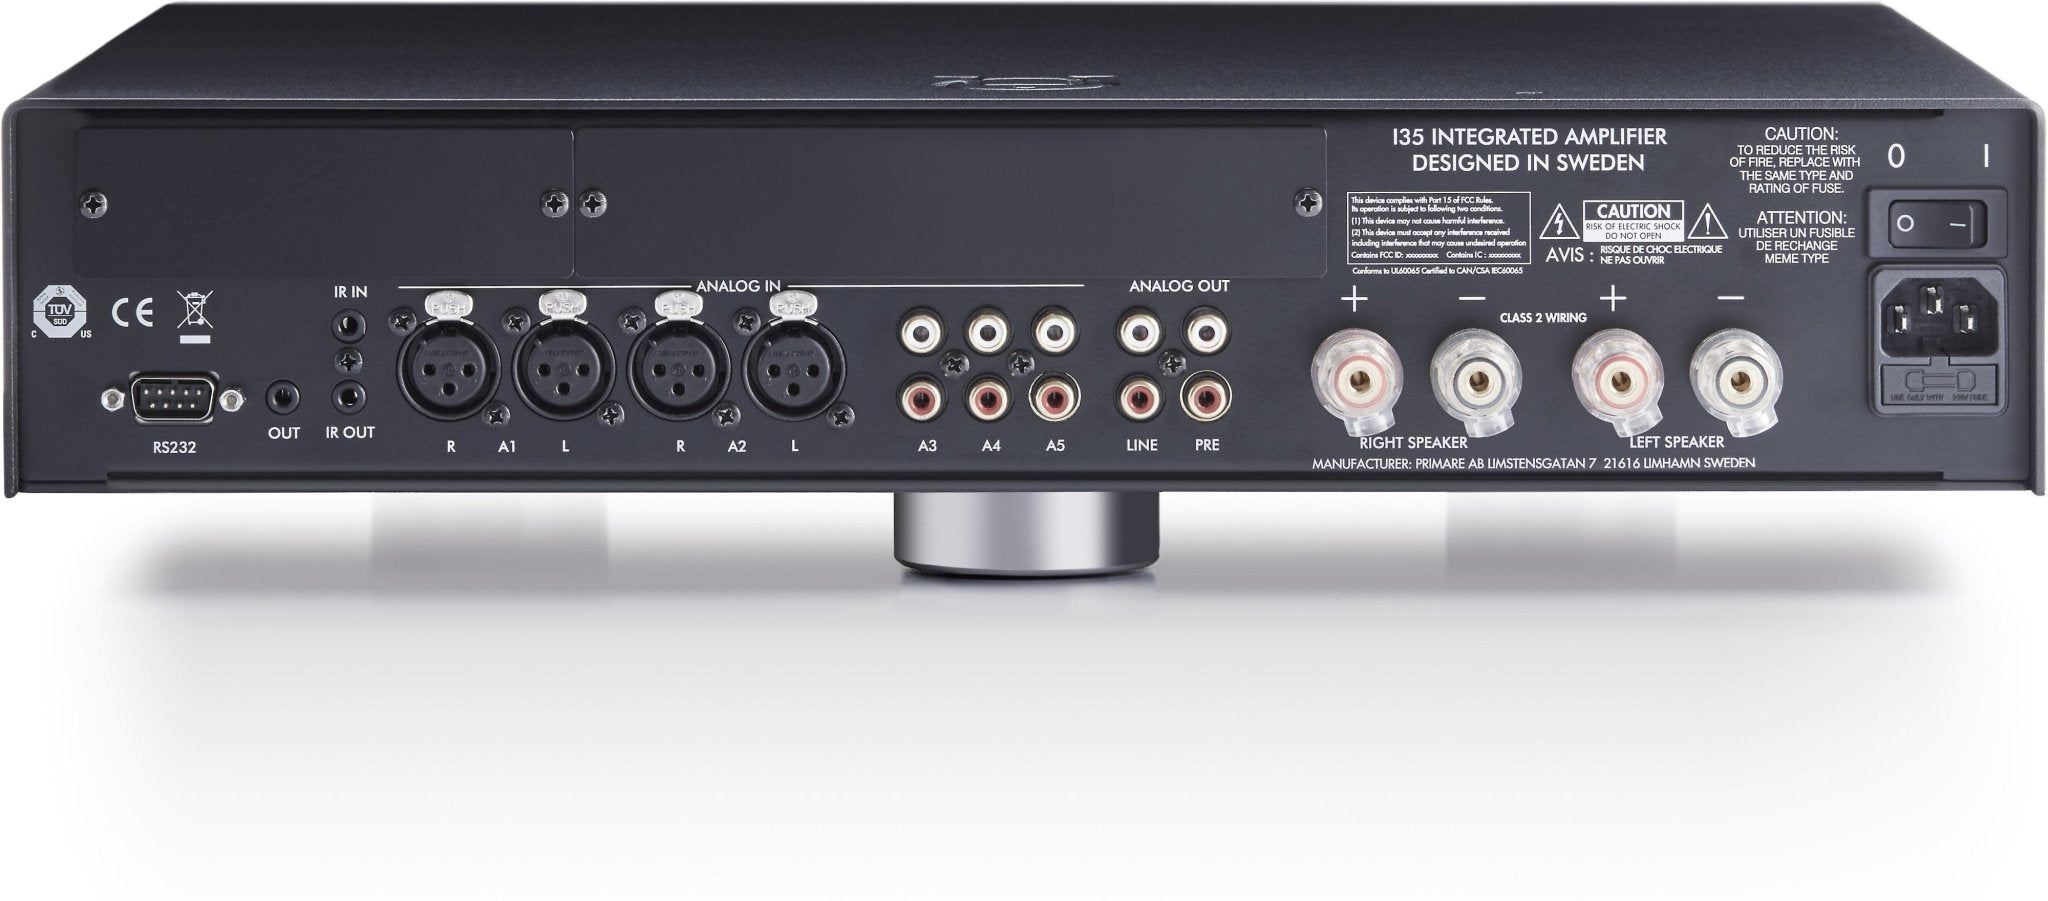 Primare i35 Integrated Amplifier - Dreamedia AV